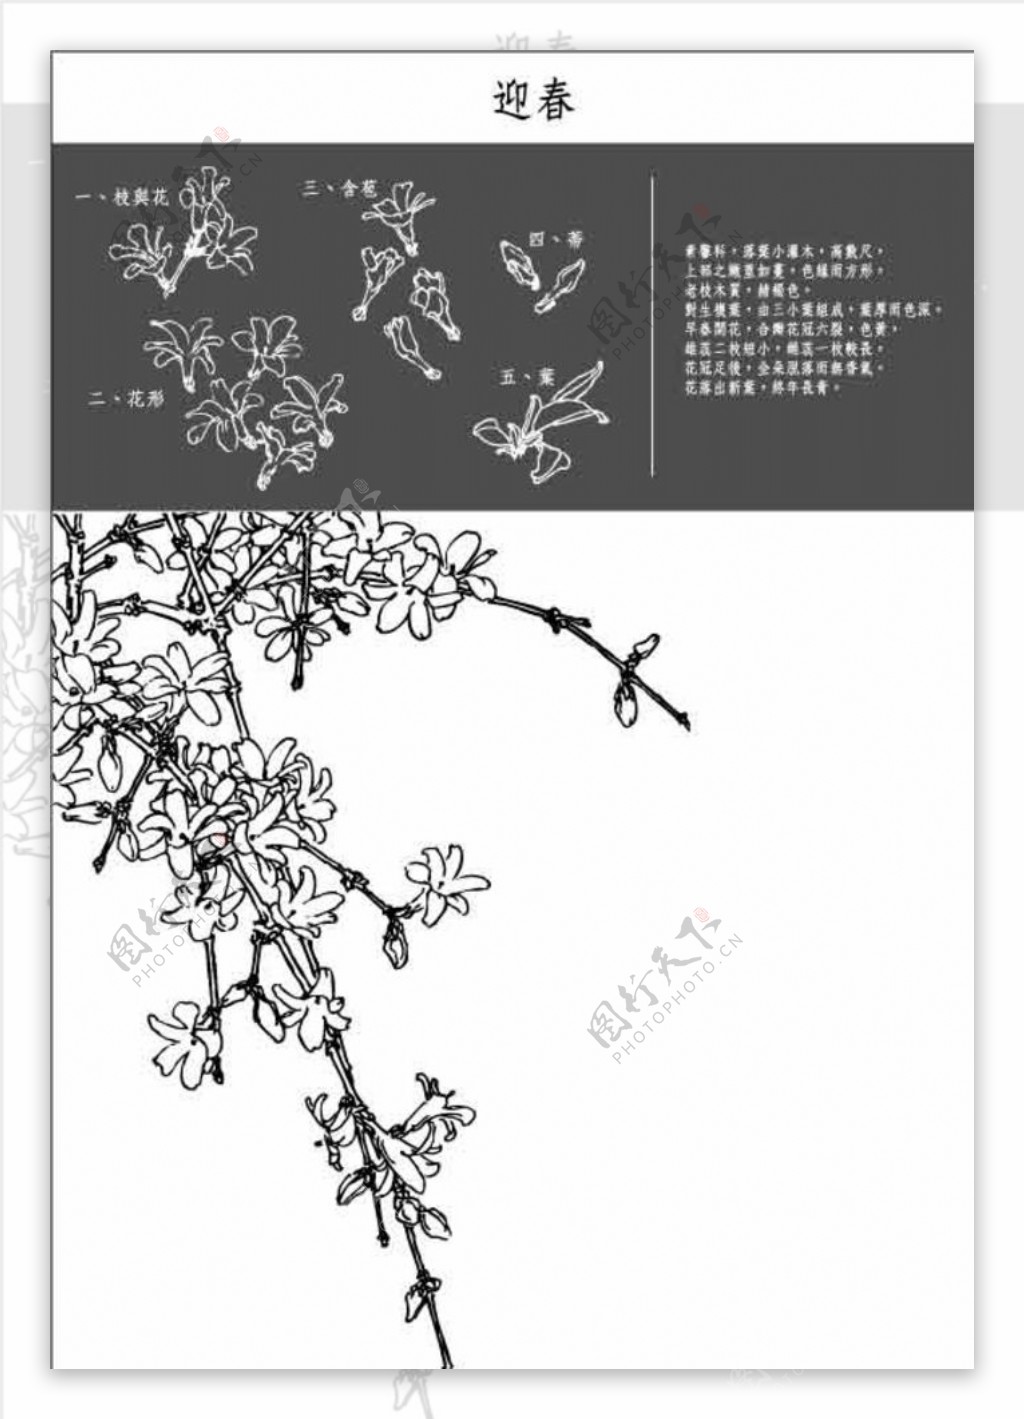 中国工笔画图谱迎春